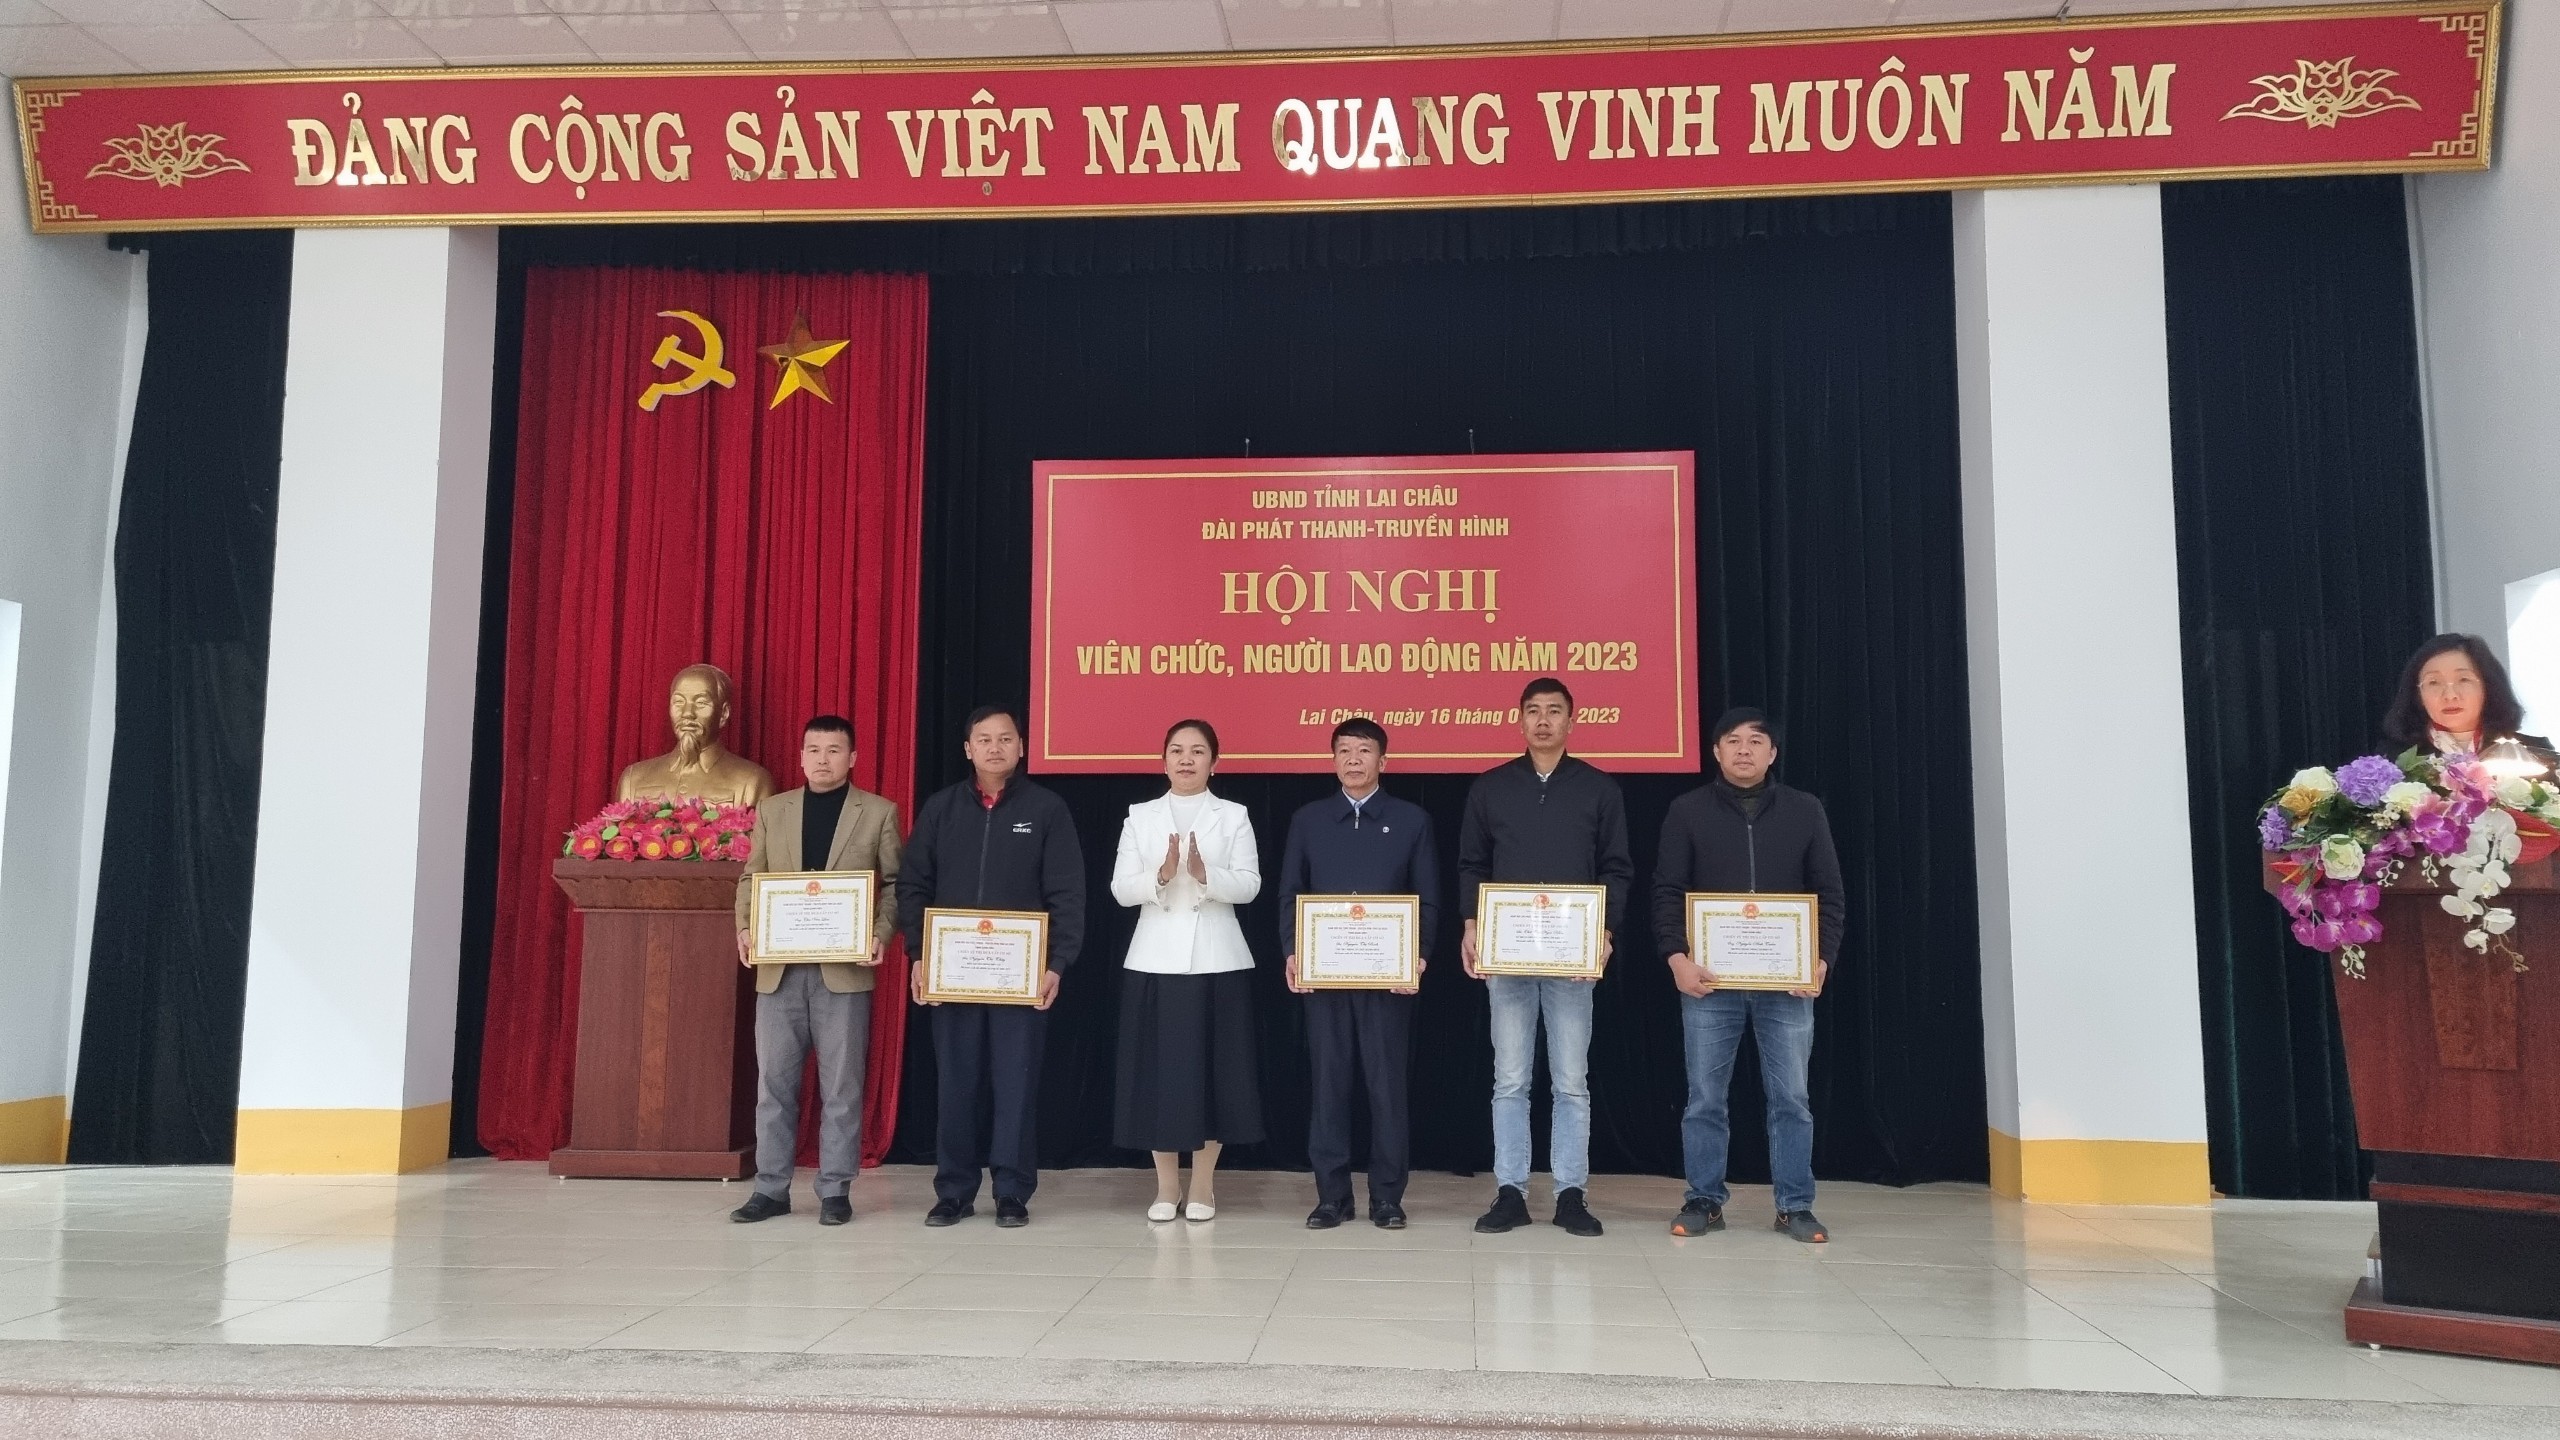 Đồng chí Nguyễn Thị Ngọc Hà - Giám đốc Đài Phát thanh - Truyền hình tỉnh trao Chứng nhận Chiến sỹ thi đua cấp cơ sở cho các cá nhân